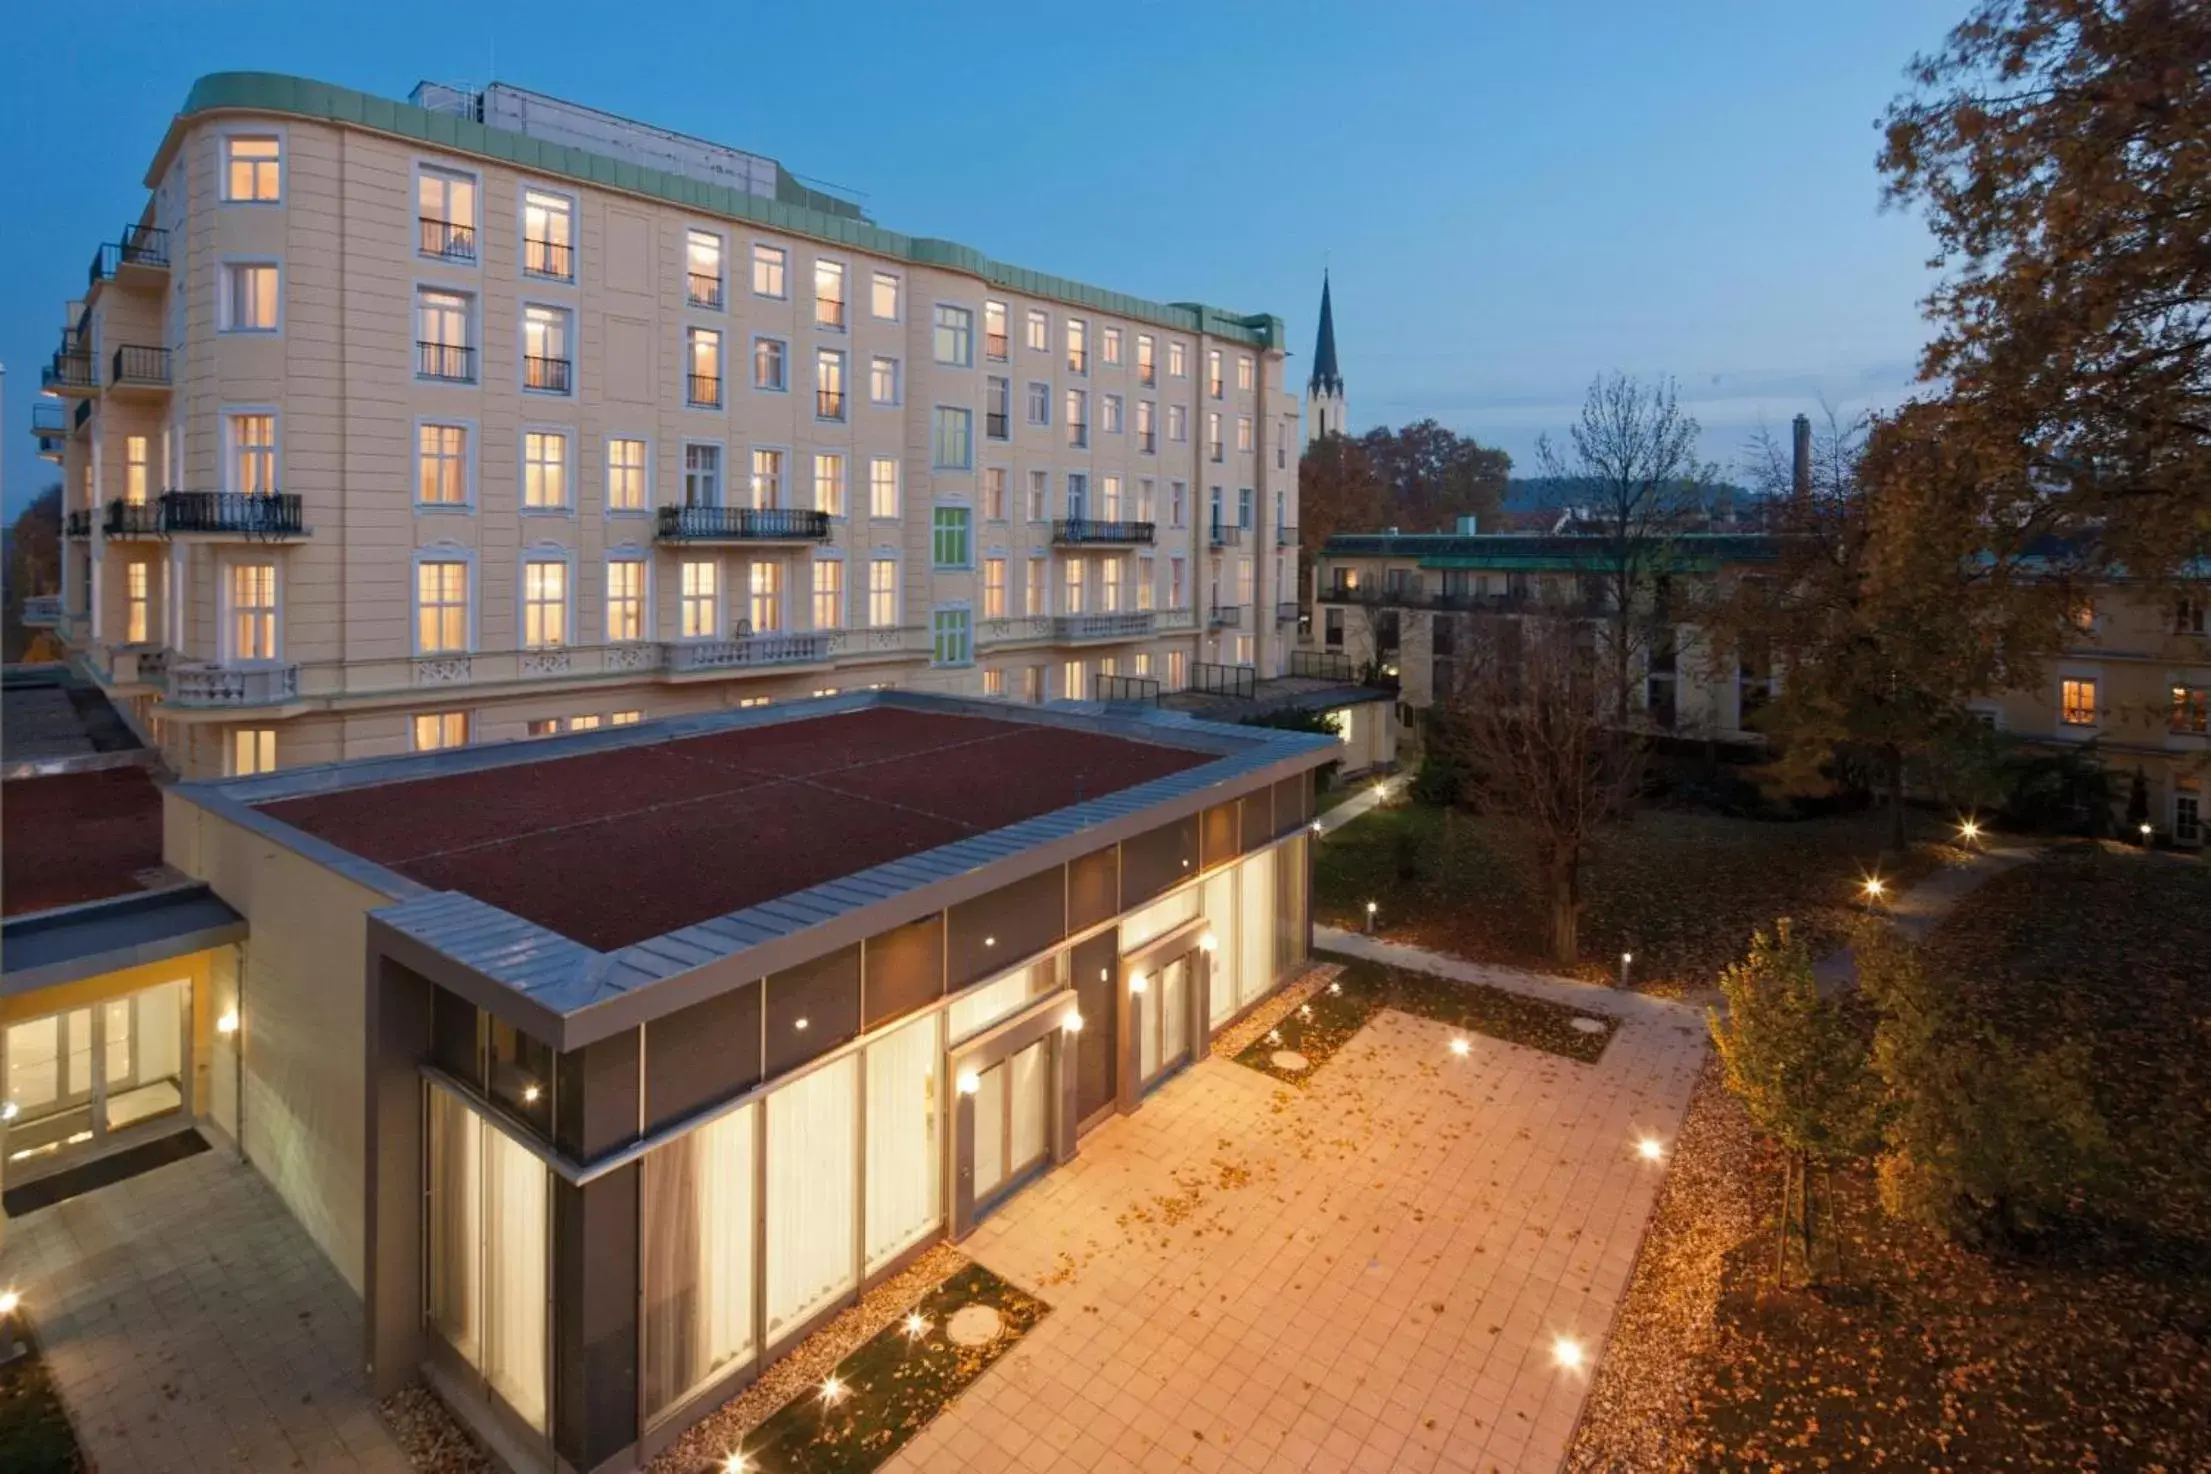 Property building, Billiards in Austria Trend Parkhotel Schönbrunn Wien